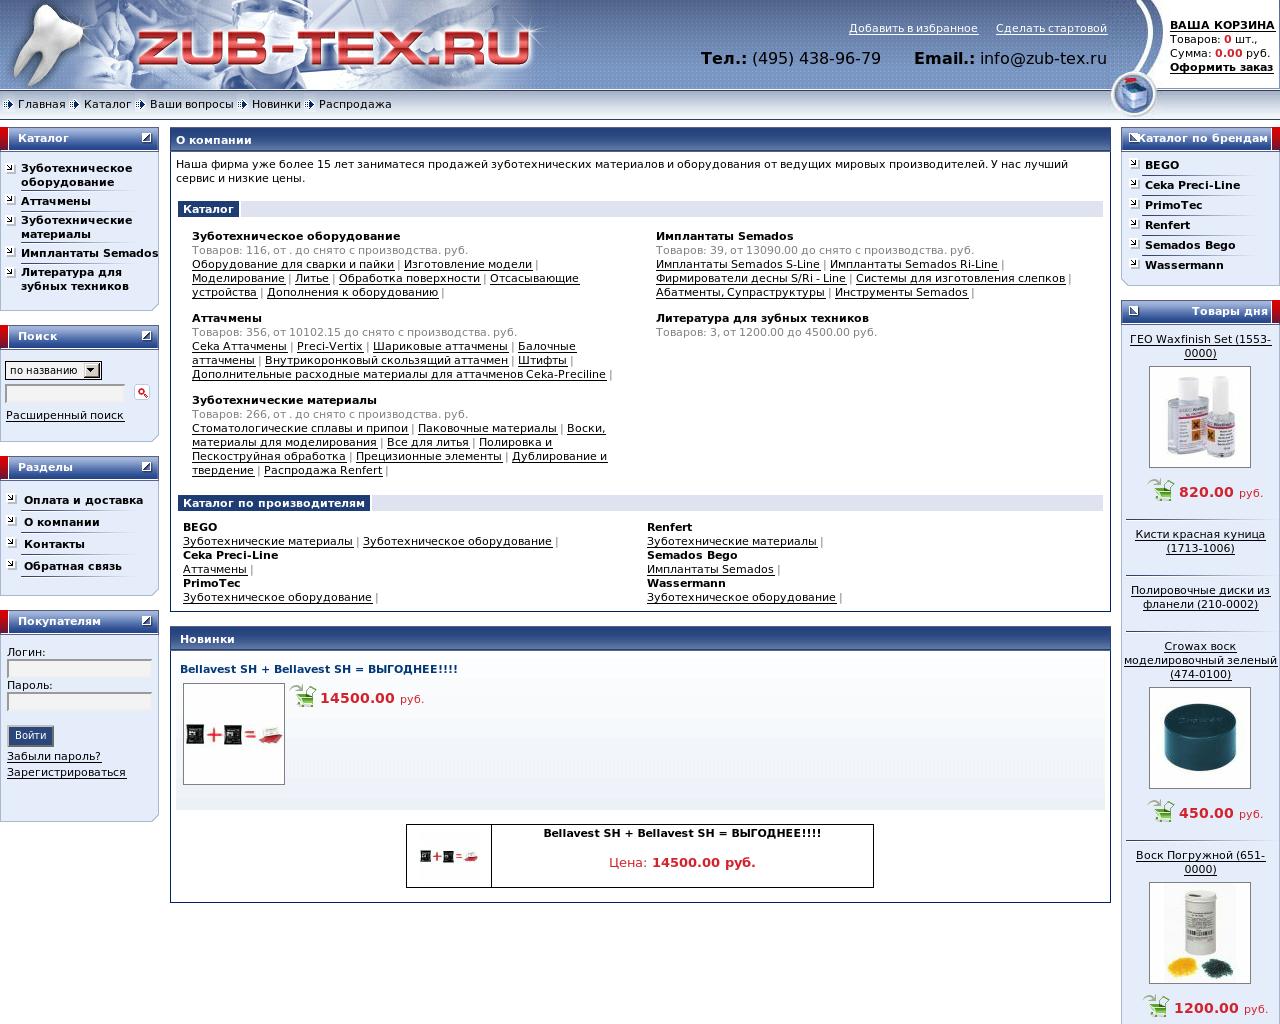 Изображение сайта zub-tex.ru в разрешении 1280x1024